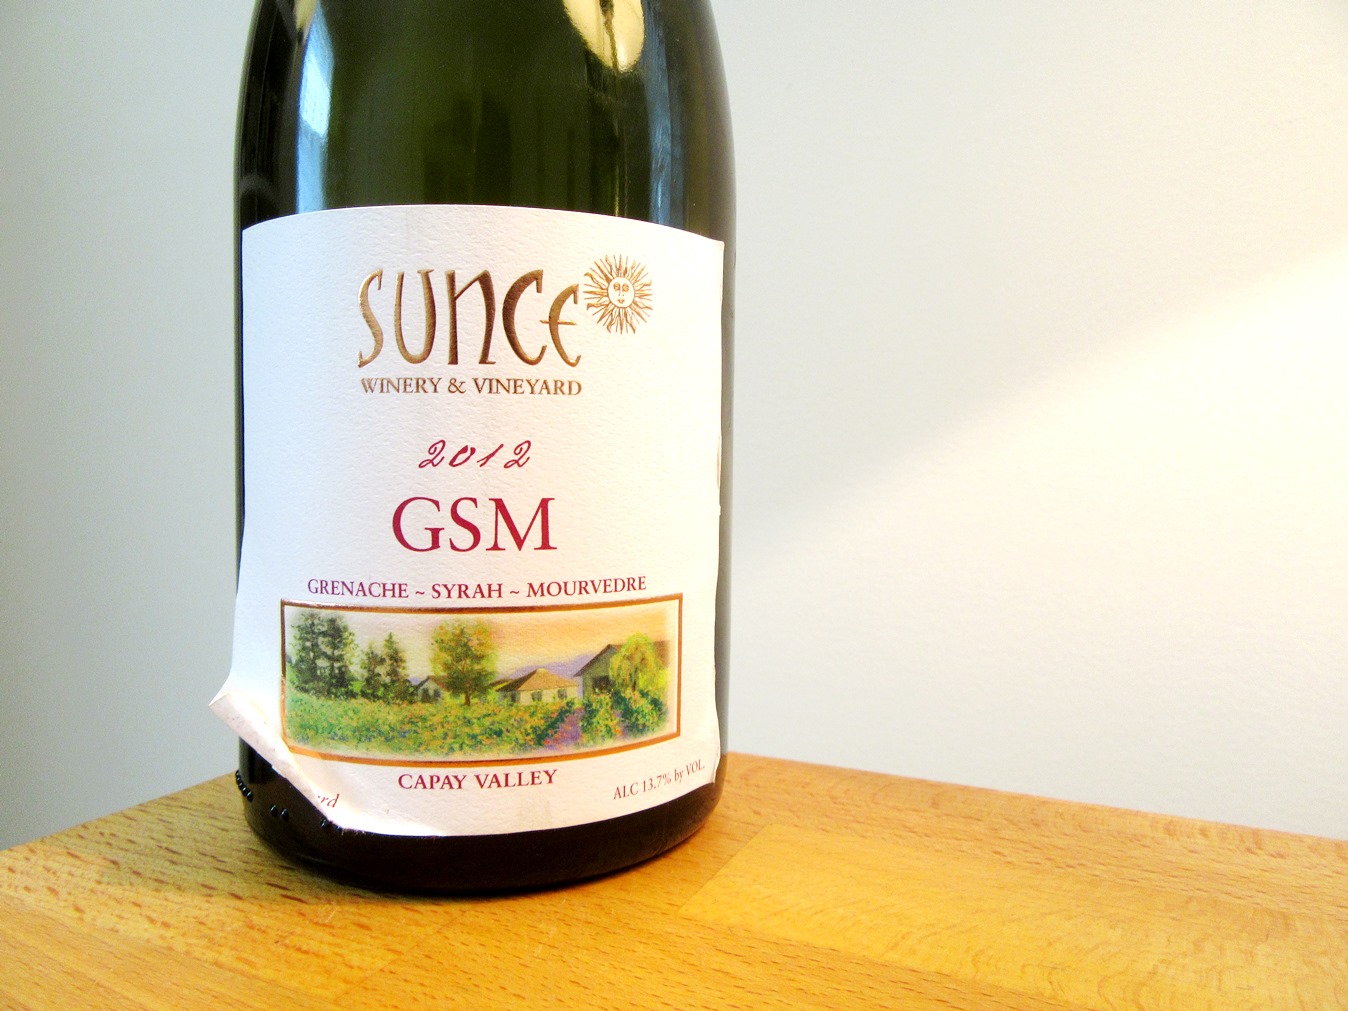 Sunce Winery & Vineyard, Grenache-Syrah-Mourvedre GSM 2012, Capay Valley, Herren Vineyard, California , Wine Casual